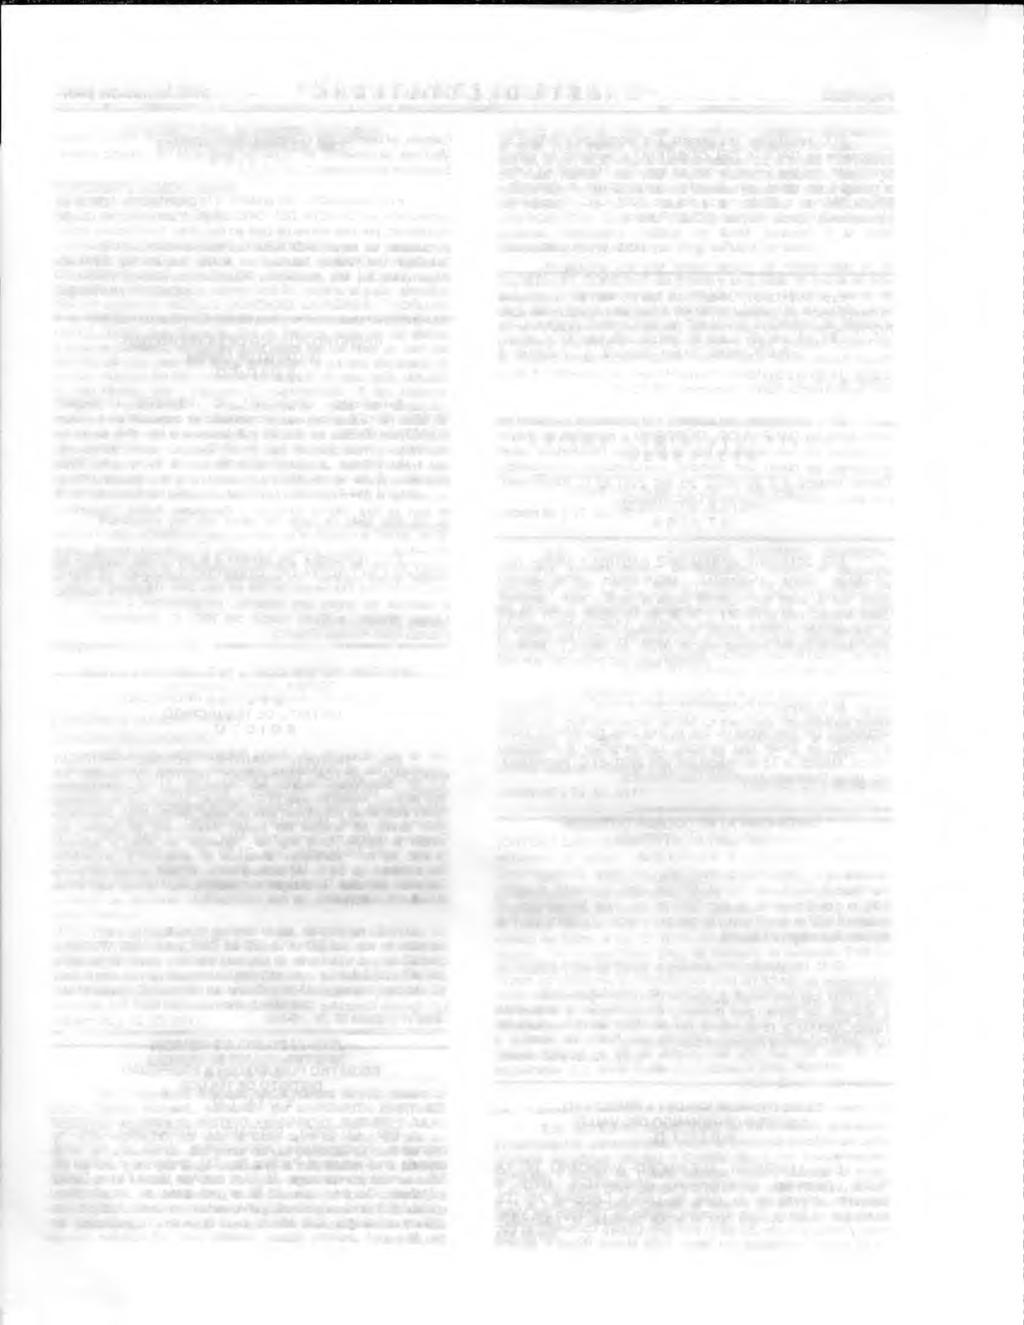 30 de marzo del 2001 "GACETA DEL GOBIERNO" Página 23 JUZGADO 2 CIVIL DE PRIMERA INSTANCIA ECATEPEC DE MORELOS, MEX. EXPEDIENTE NUMERO 958/94. SEGUNDA SECRETARIA. SE CONVOCA A POSTORES.